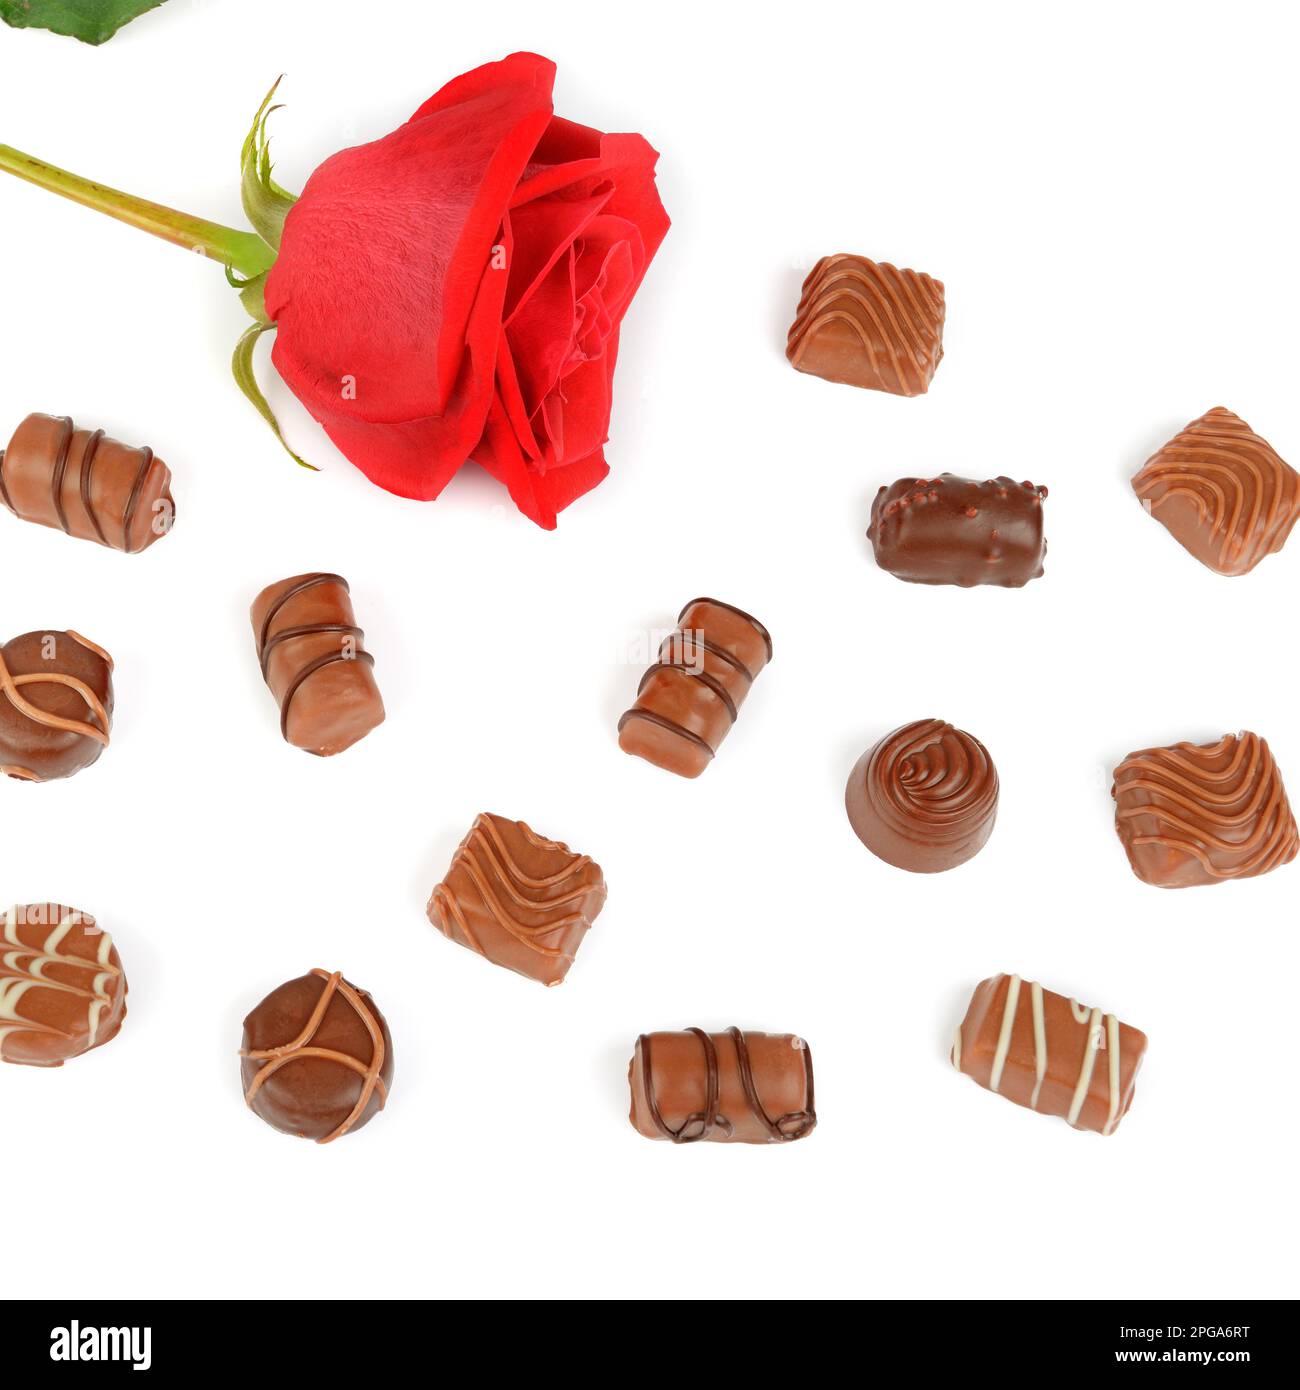 Assortimento di caramelle al cioccolato e rosa rossa isolate su sfondo bianco. Piano di giacitura, vista dall'alto Foto Stock